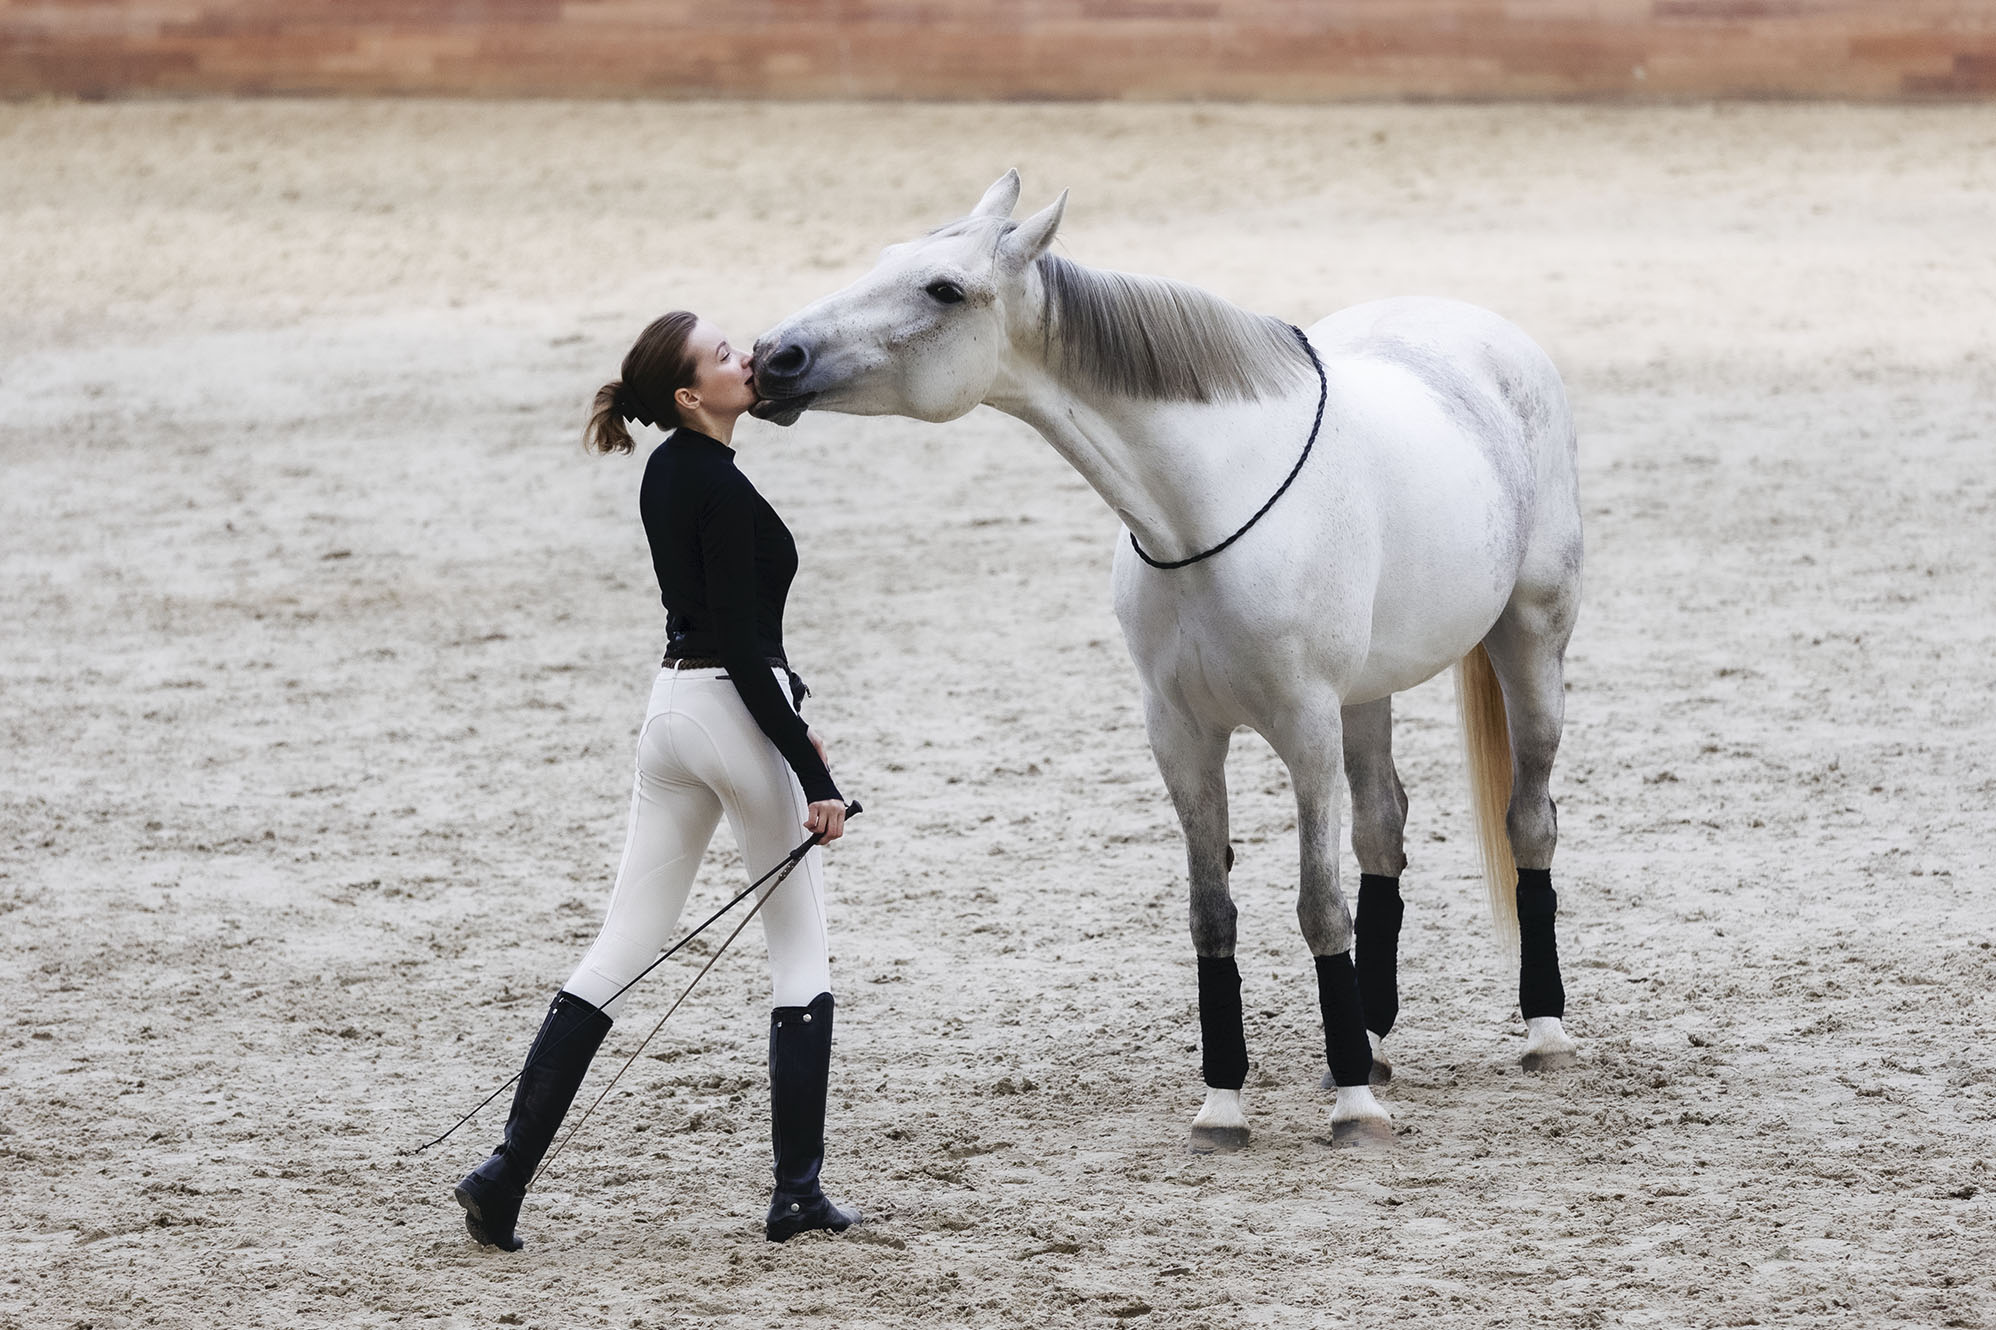 девушка, лошадь, выступление, спорт, красота, girl, horse,sport,performance,beautiful,friends, Стукалова Юлия